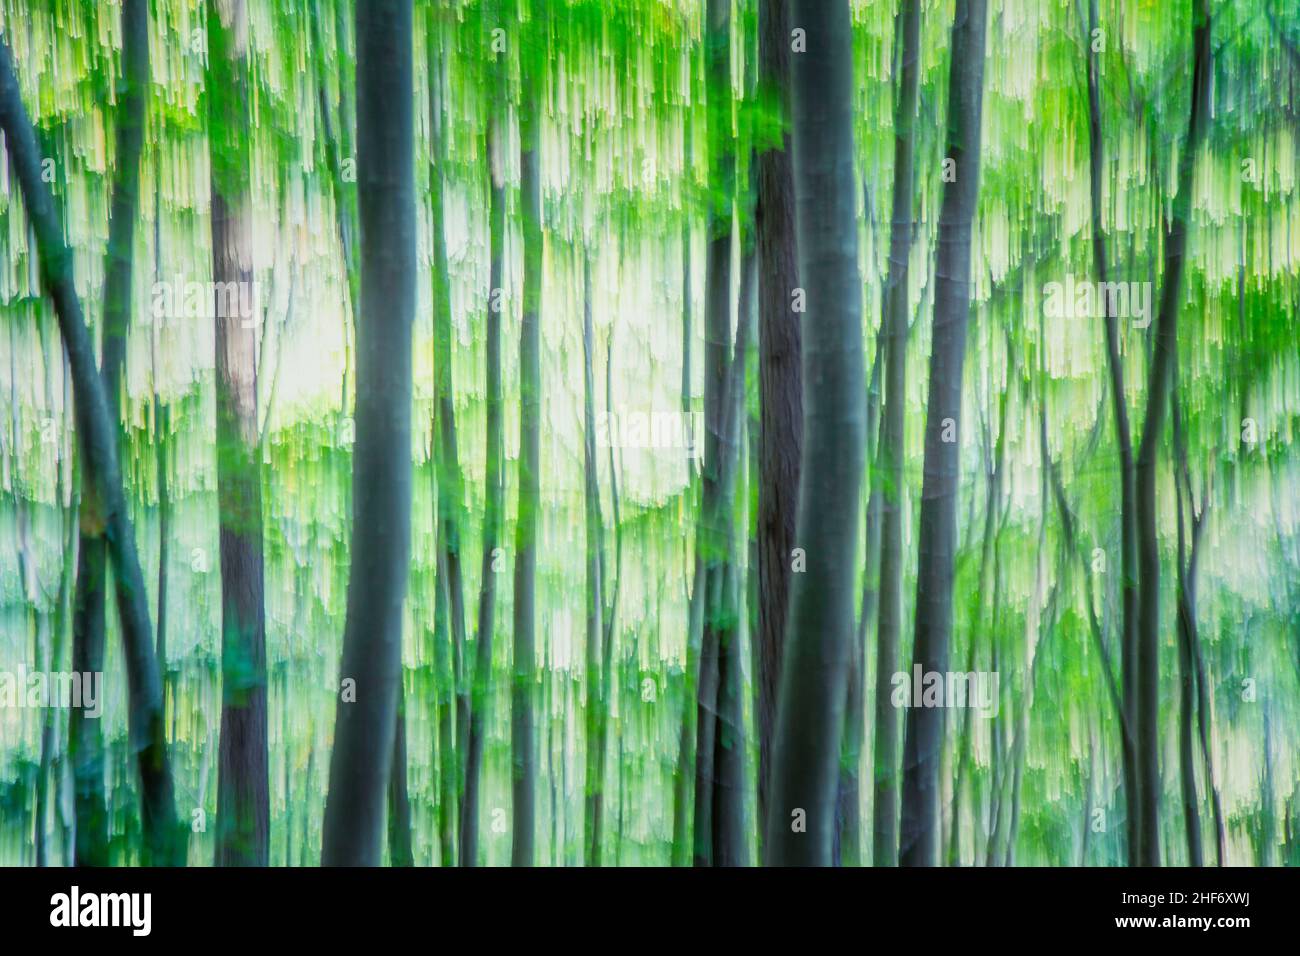 Immagine astratta, primavera nella foresta, toni verdi Foto Stock